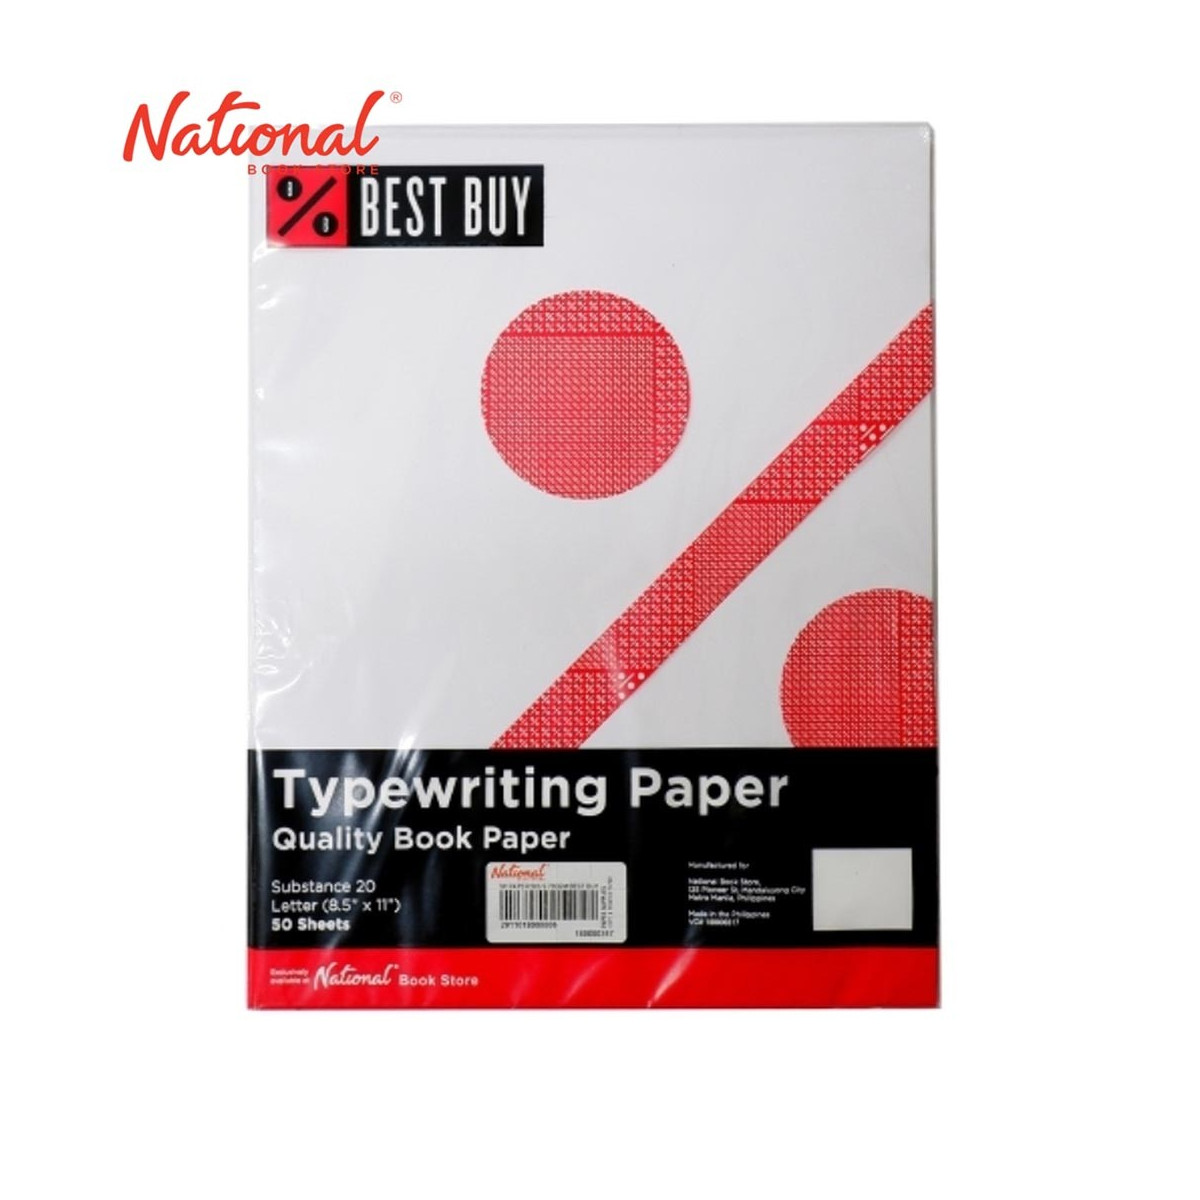 Typewriting Paper buy in Kolkata